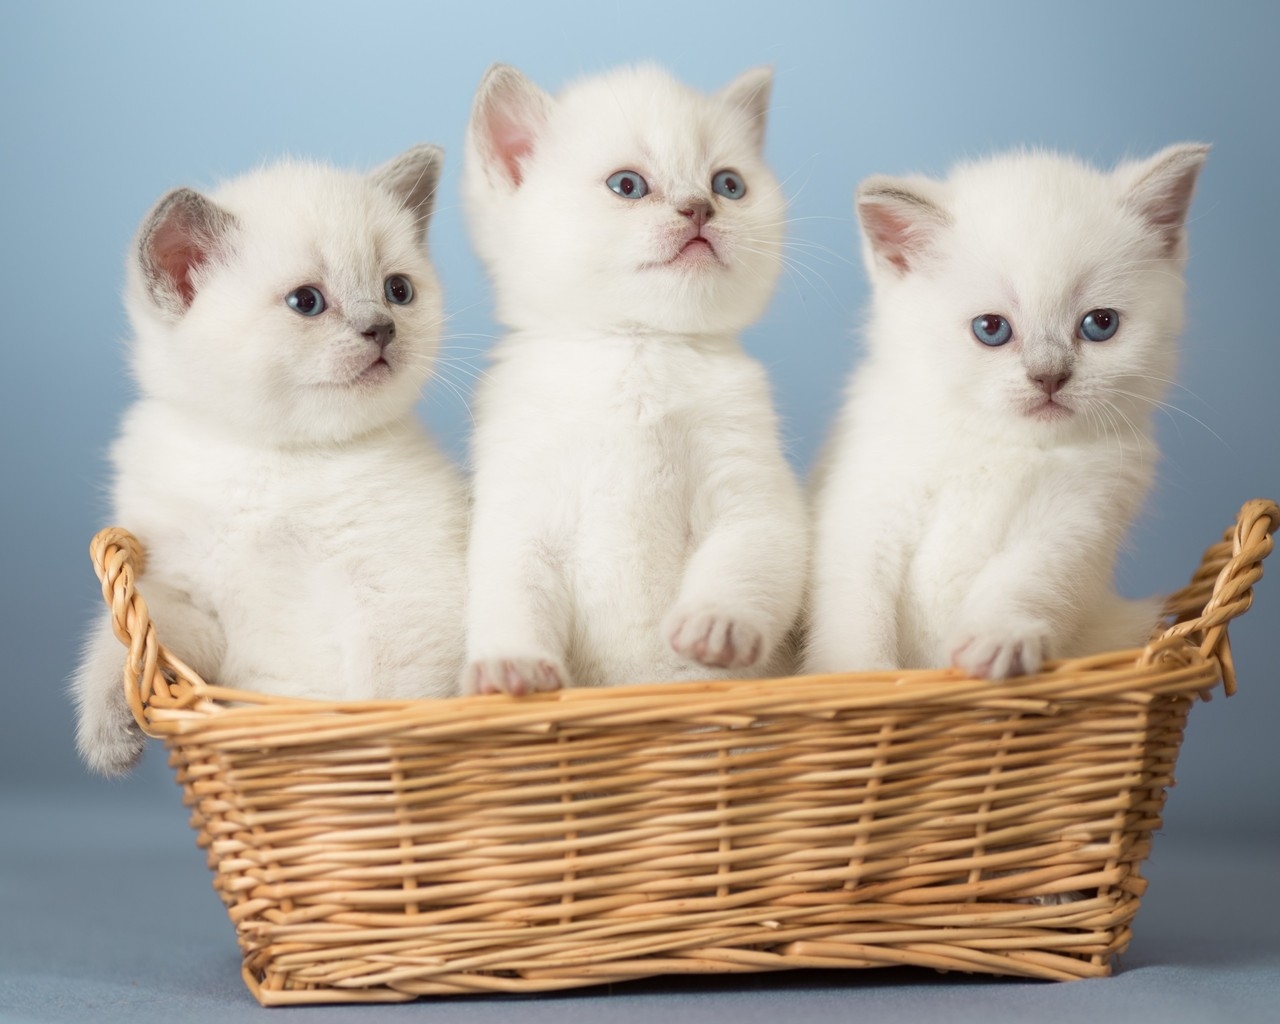 White Kittens for 1280 x 1024 resolution